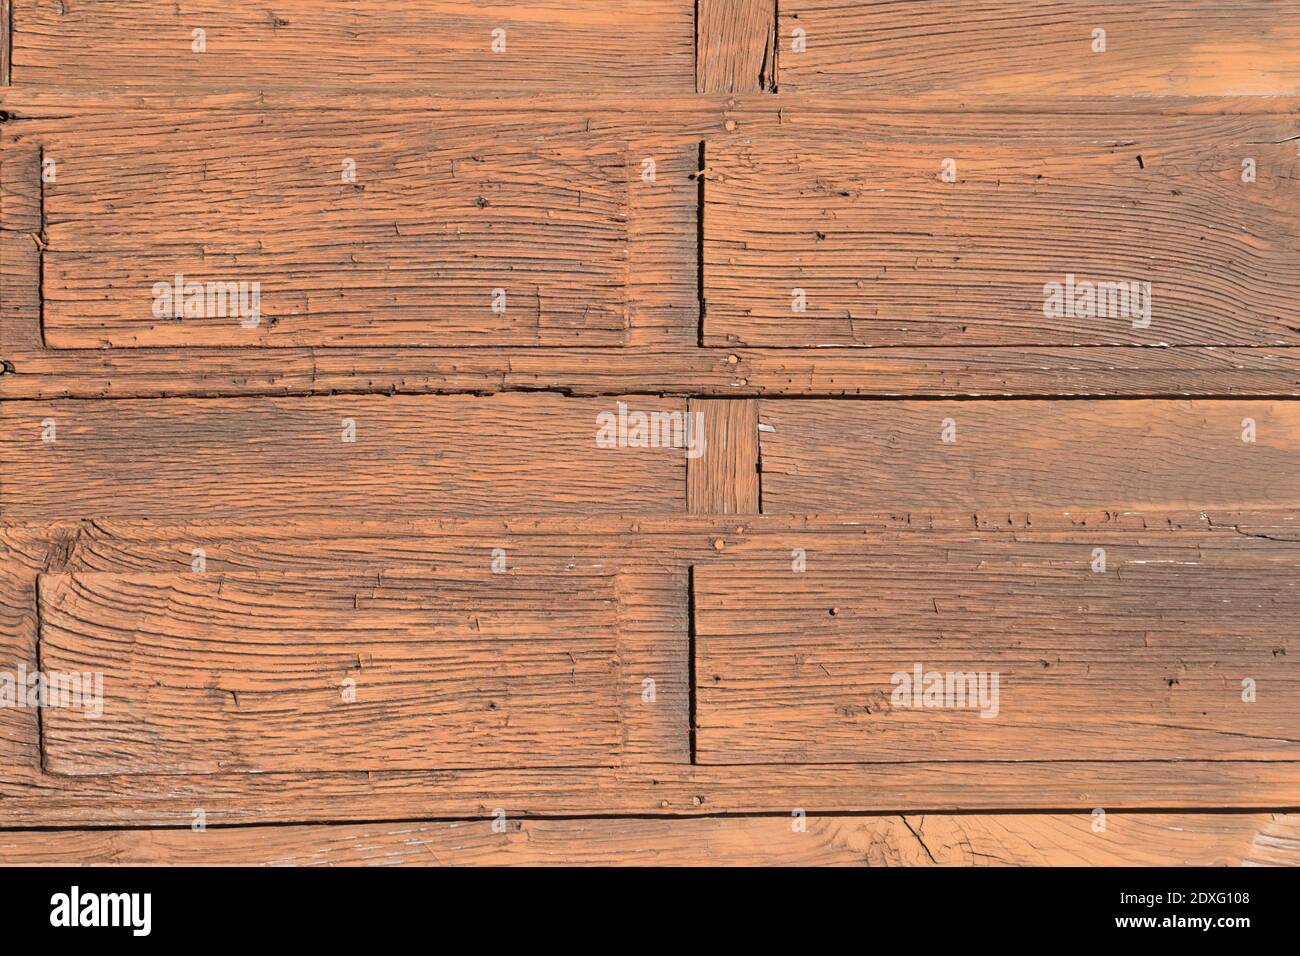 Une partie d'une ancienne porte en bois. Arrière-plan rustique, vieux bois et usé par le passage du temps. Banque D'Images